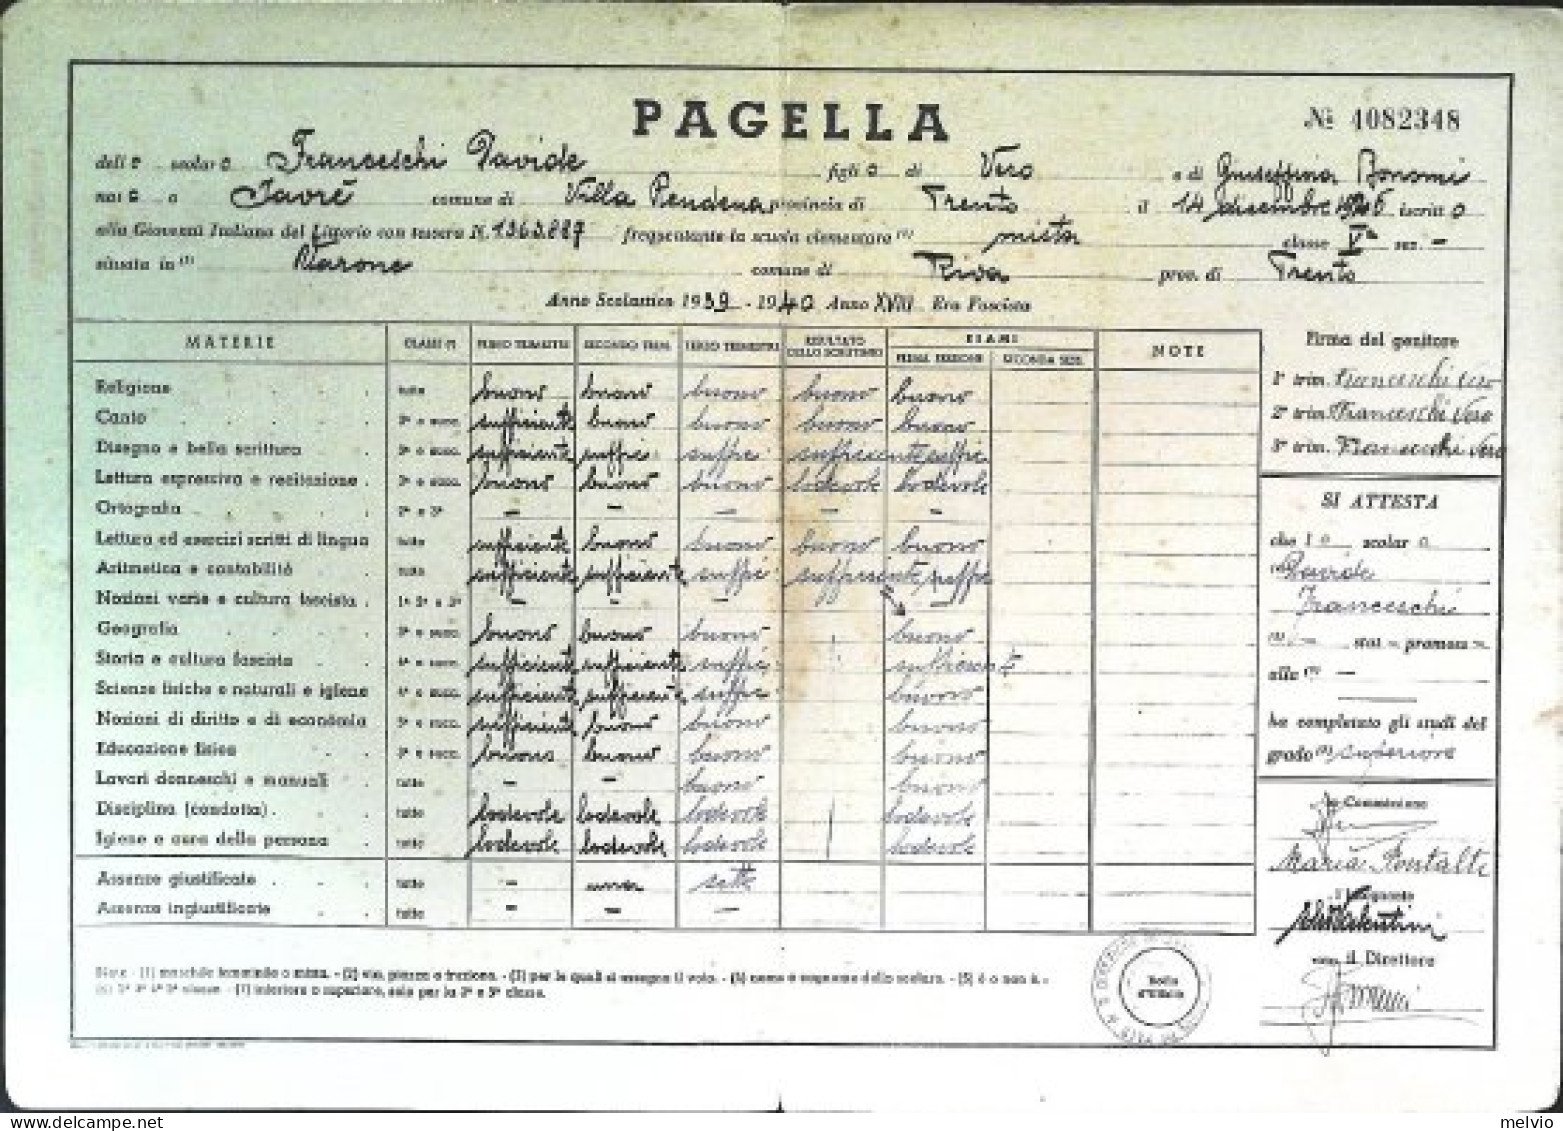 1940-pagella Ministero Educazione Nazionale Vincere P.N.F. Gioventù Italiana Del - Diplômes & Bulletins Scolaires